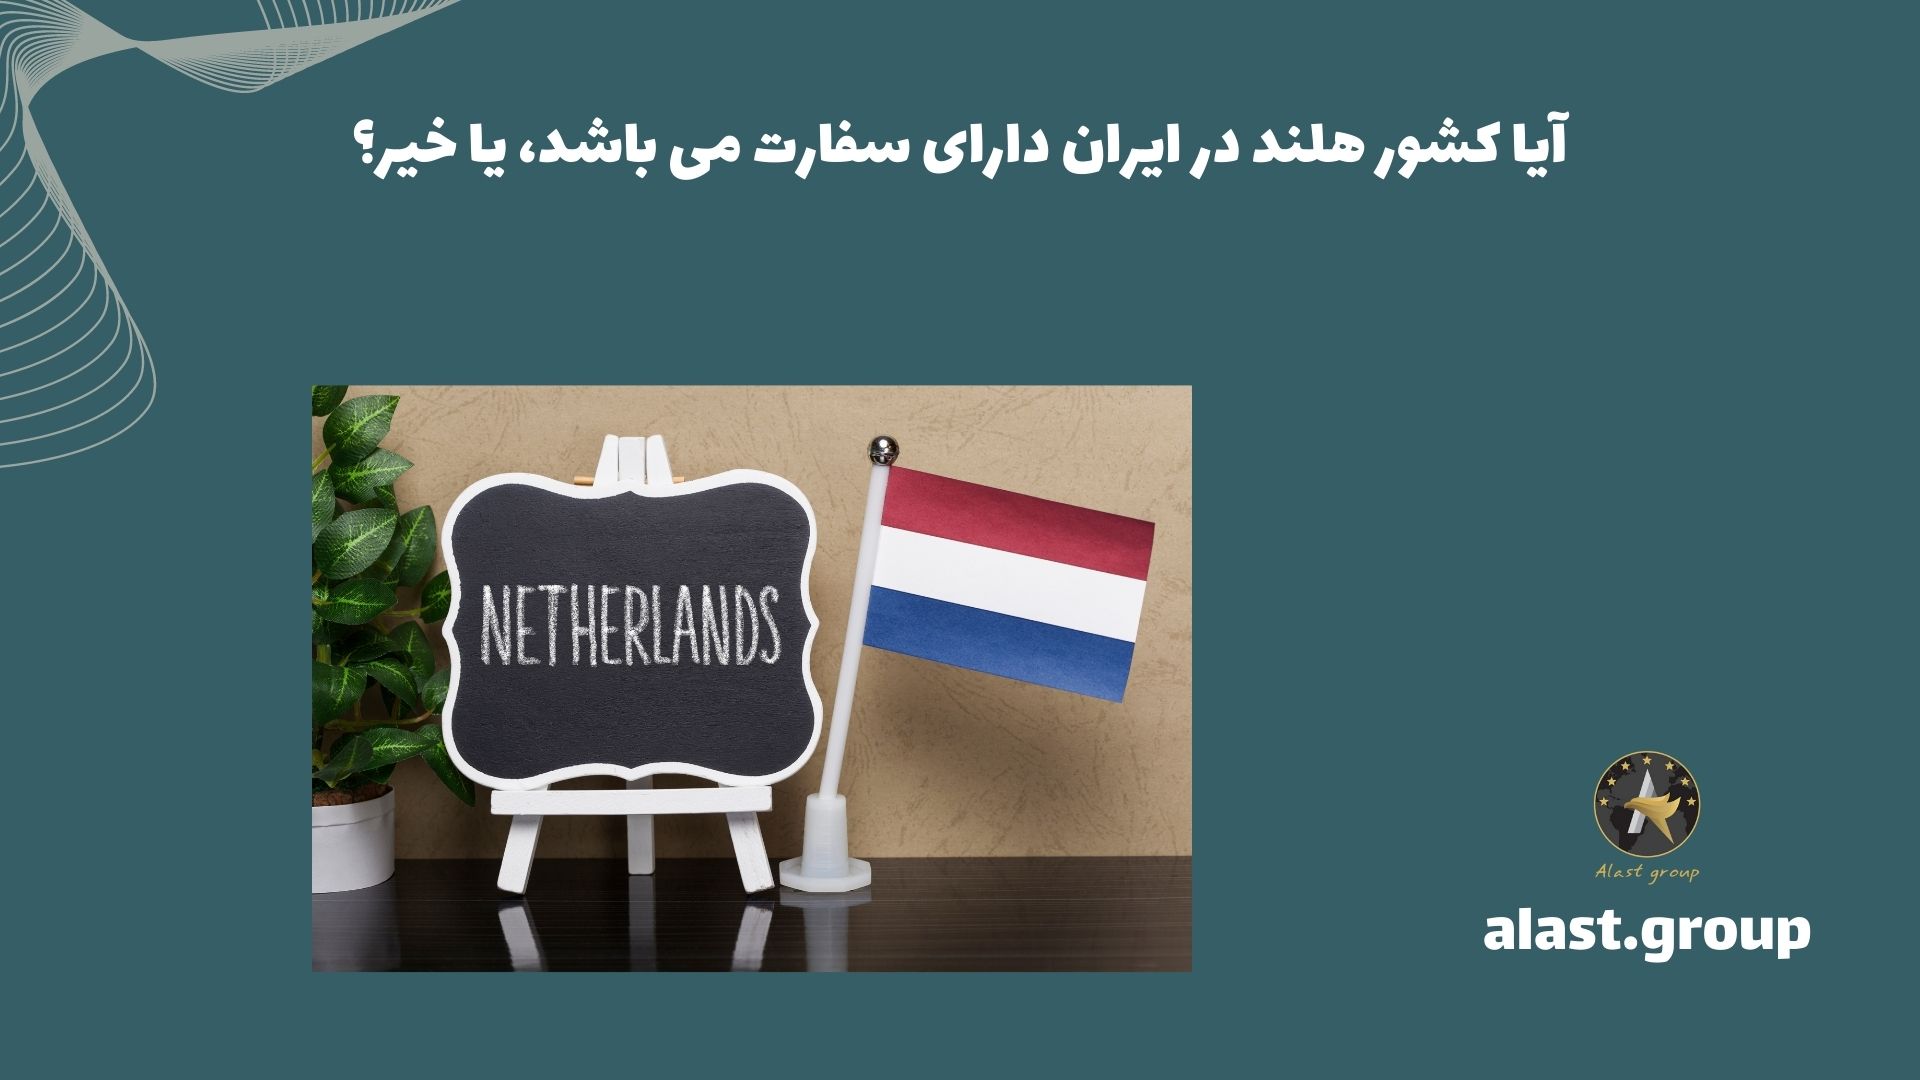 آیا کشور هلند در ایران دارای سفارت می باشد، یا خیر؟